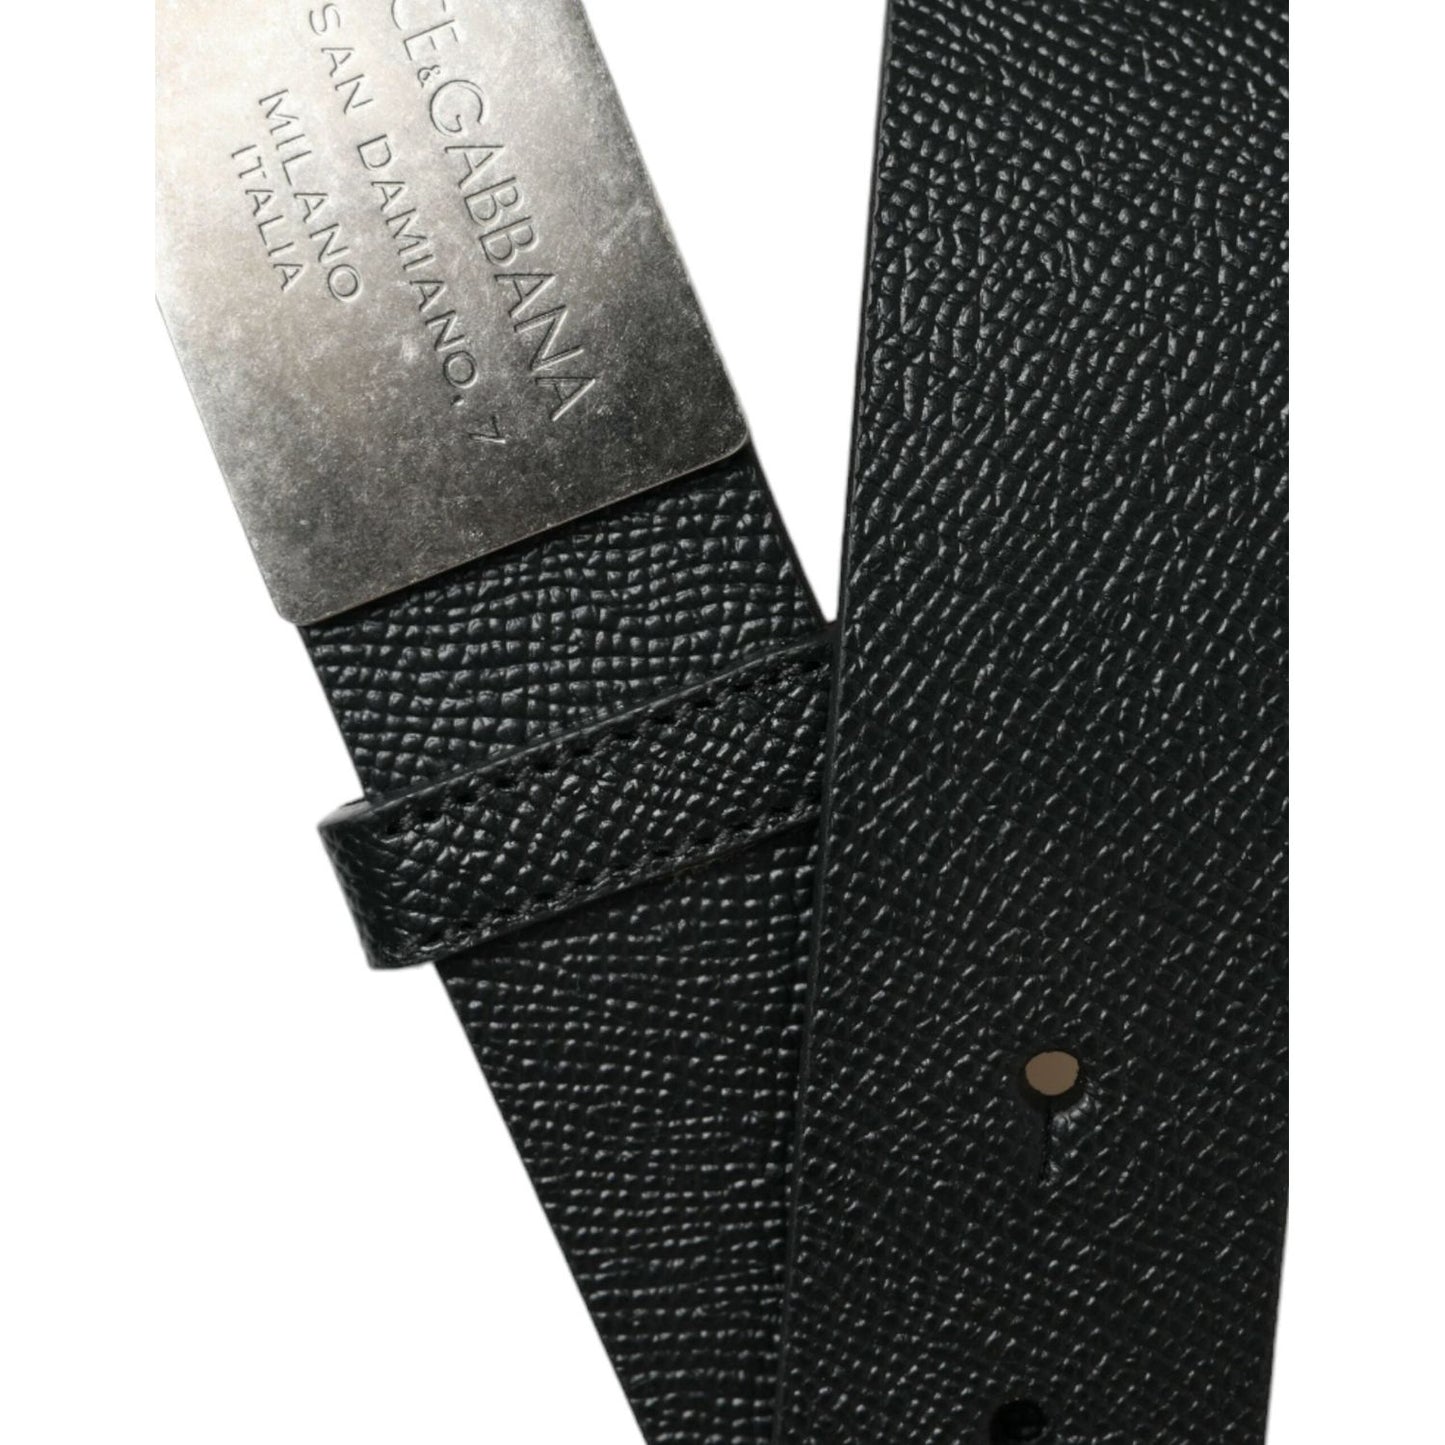 Dolce & Gabbana | Elegant Black Calfskin Leather Belt| McRichard Designer Brands   